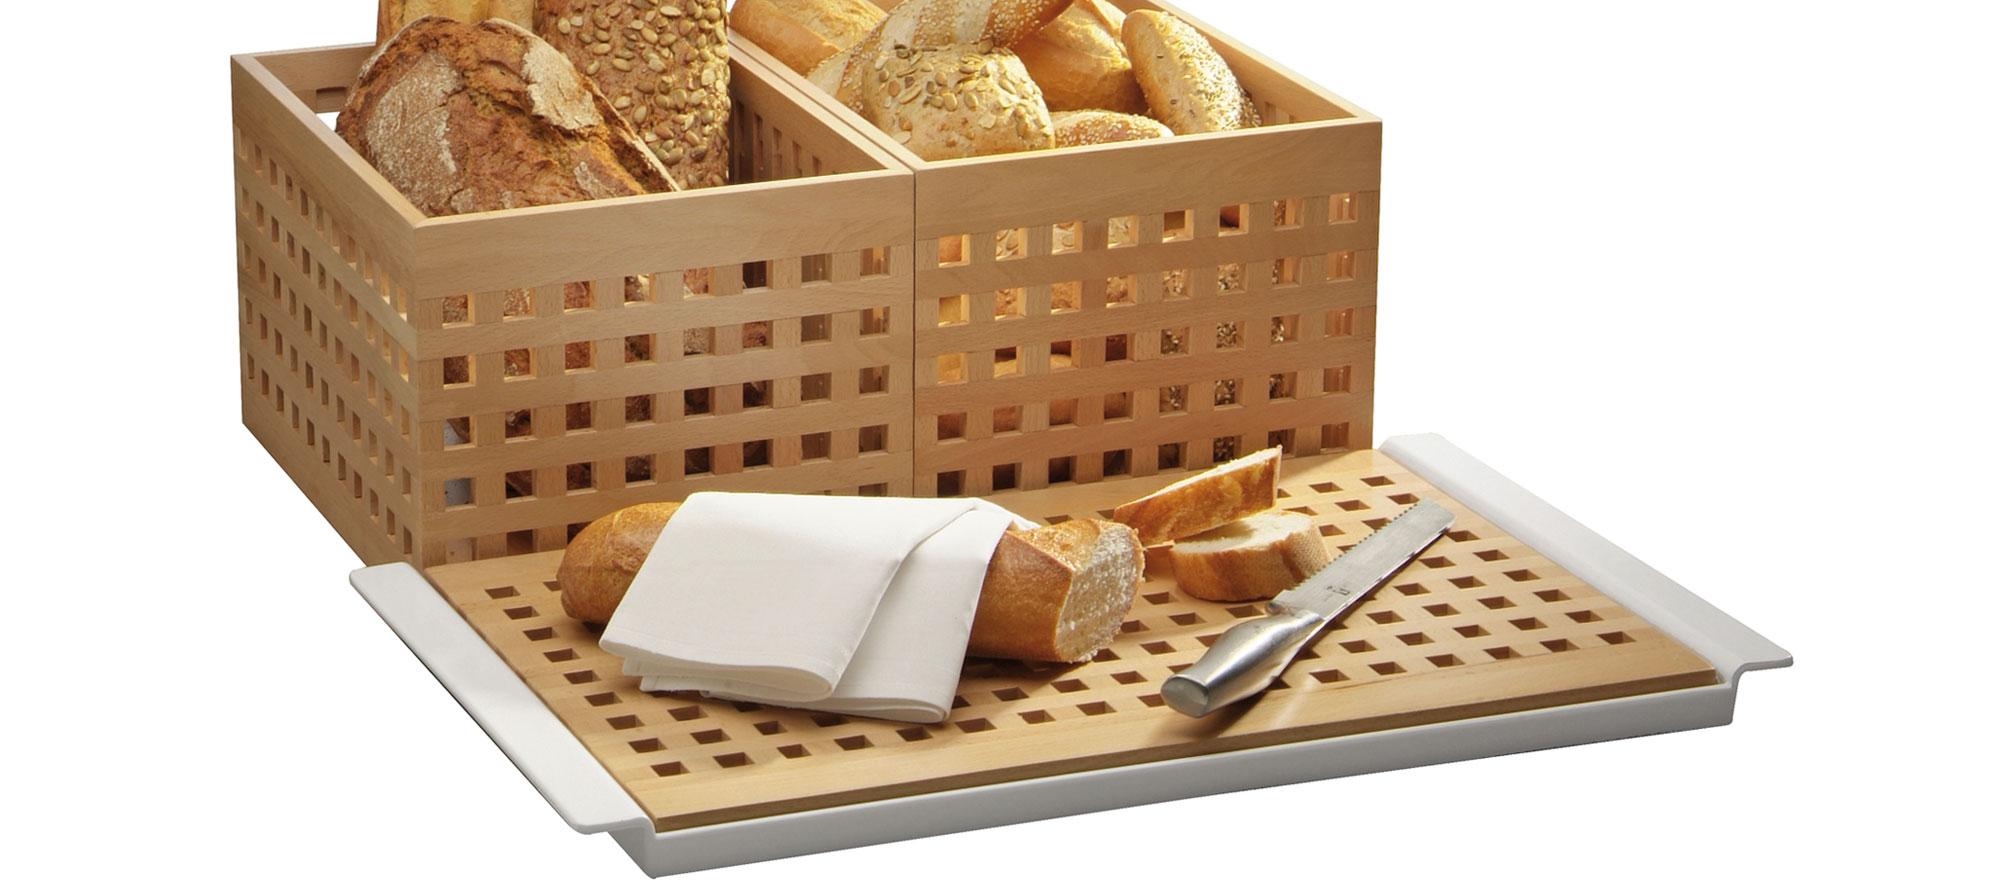 Tabla para cortar pan de APS. Catálogo Buffet y Catering Paneras y